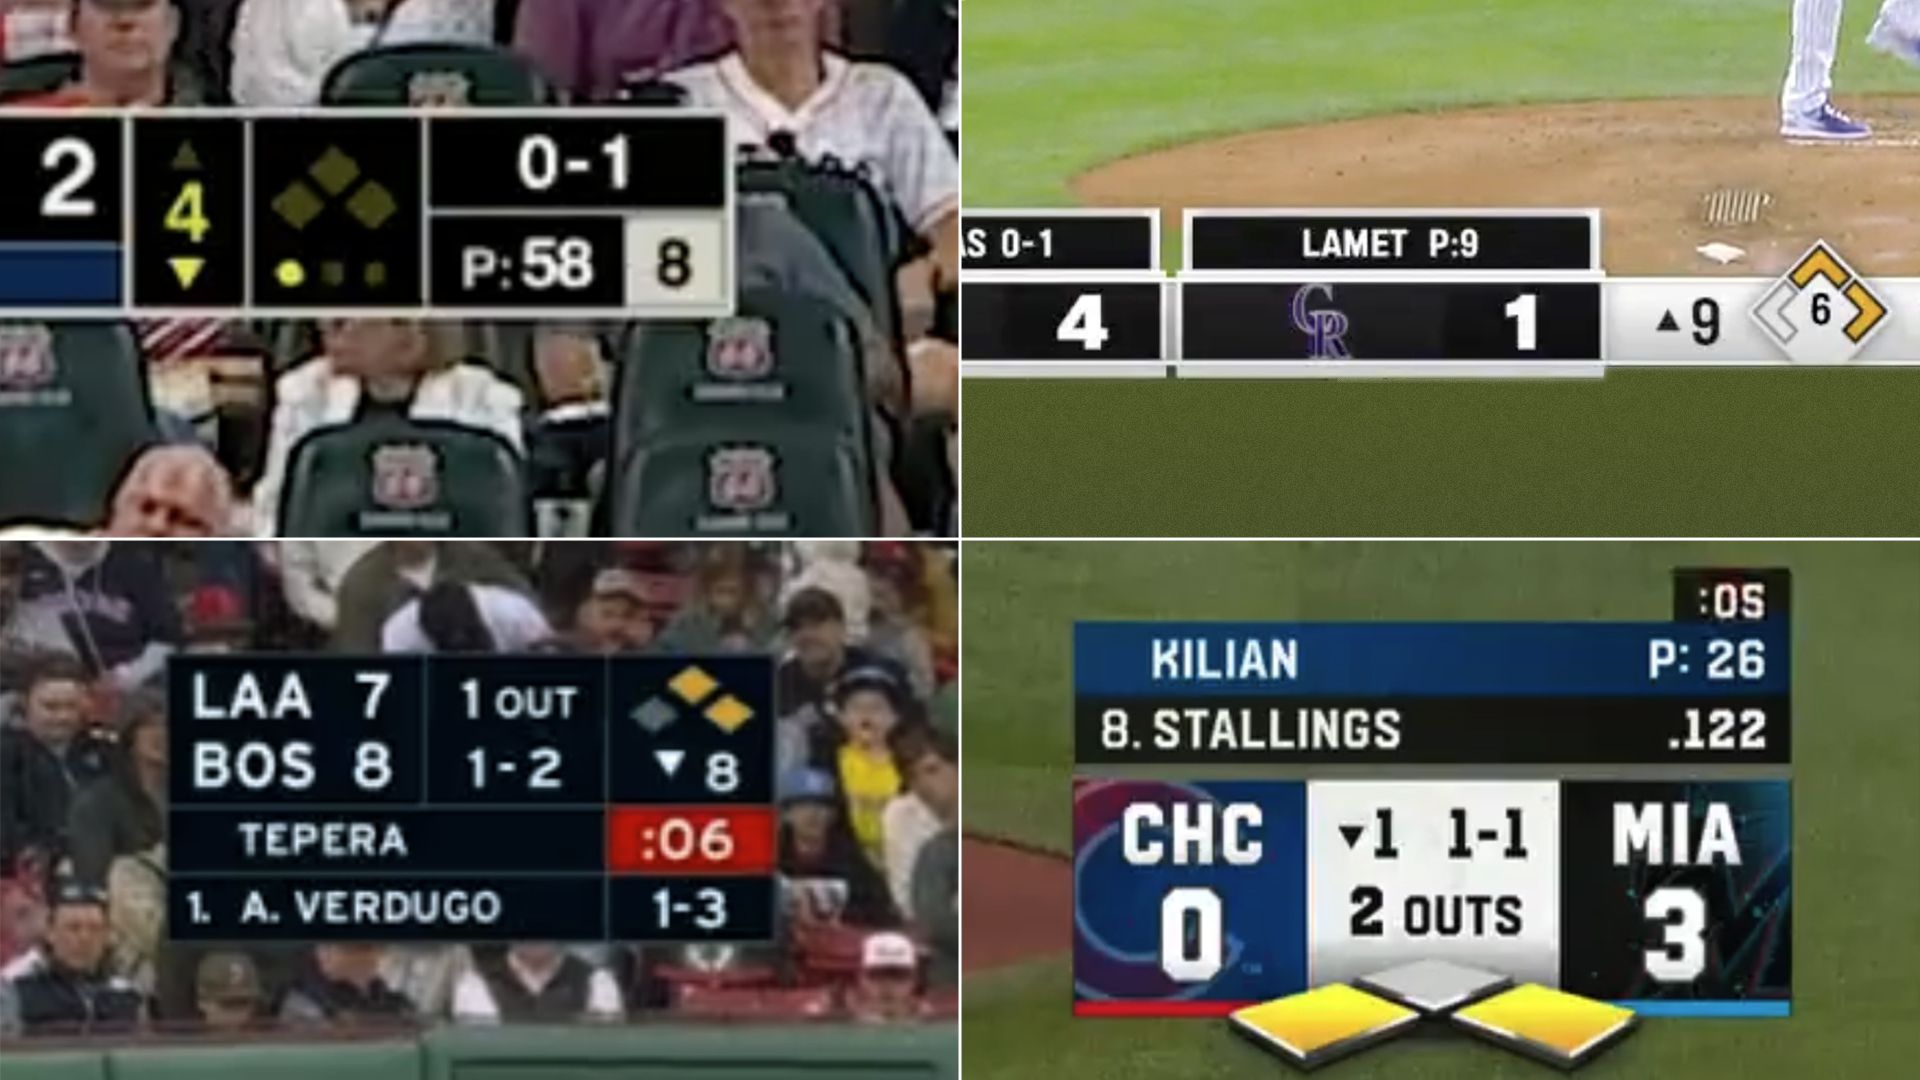 MLB broadcast screenshots